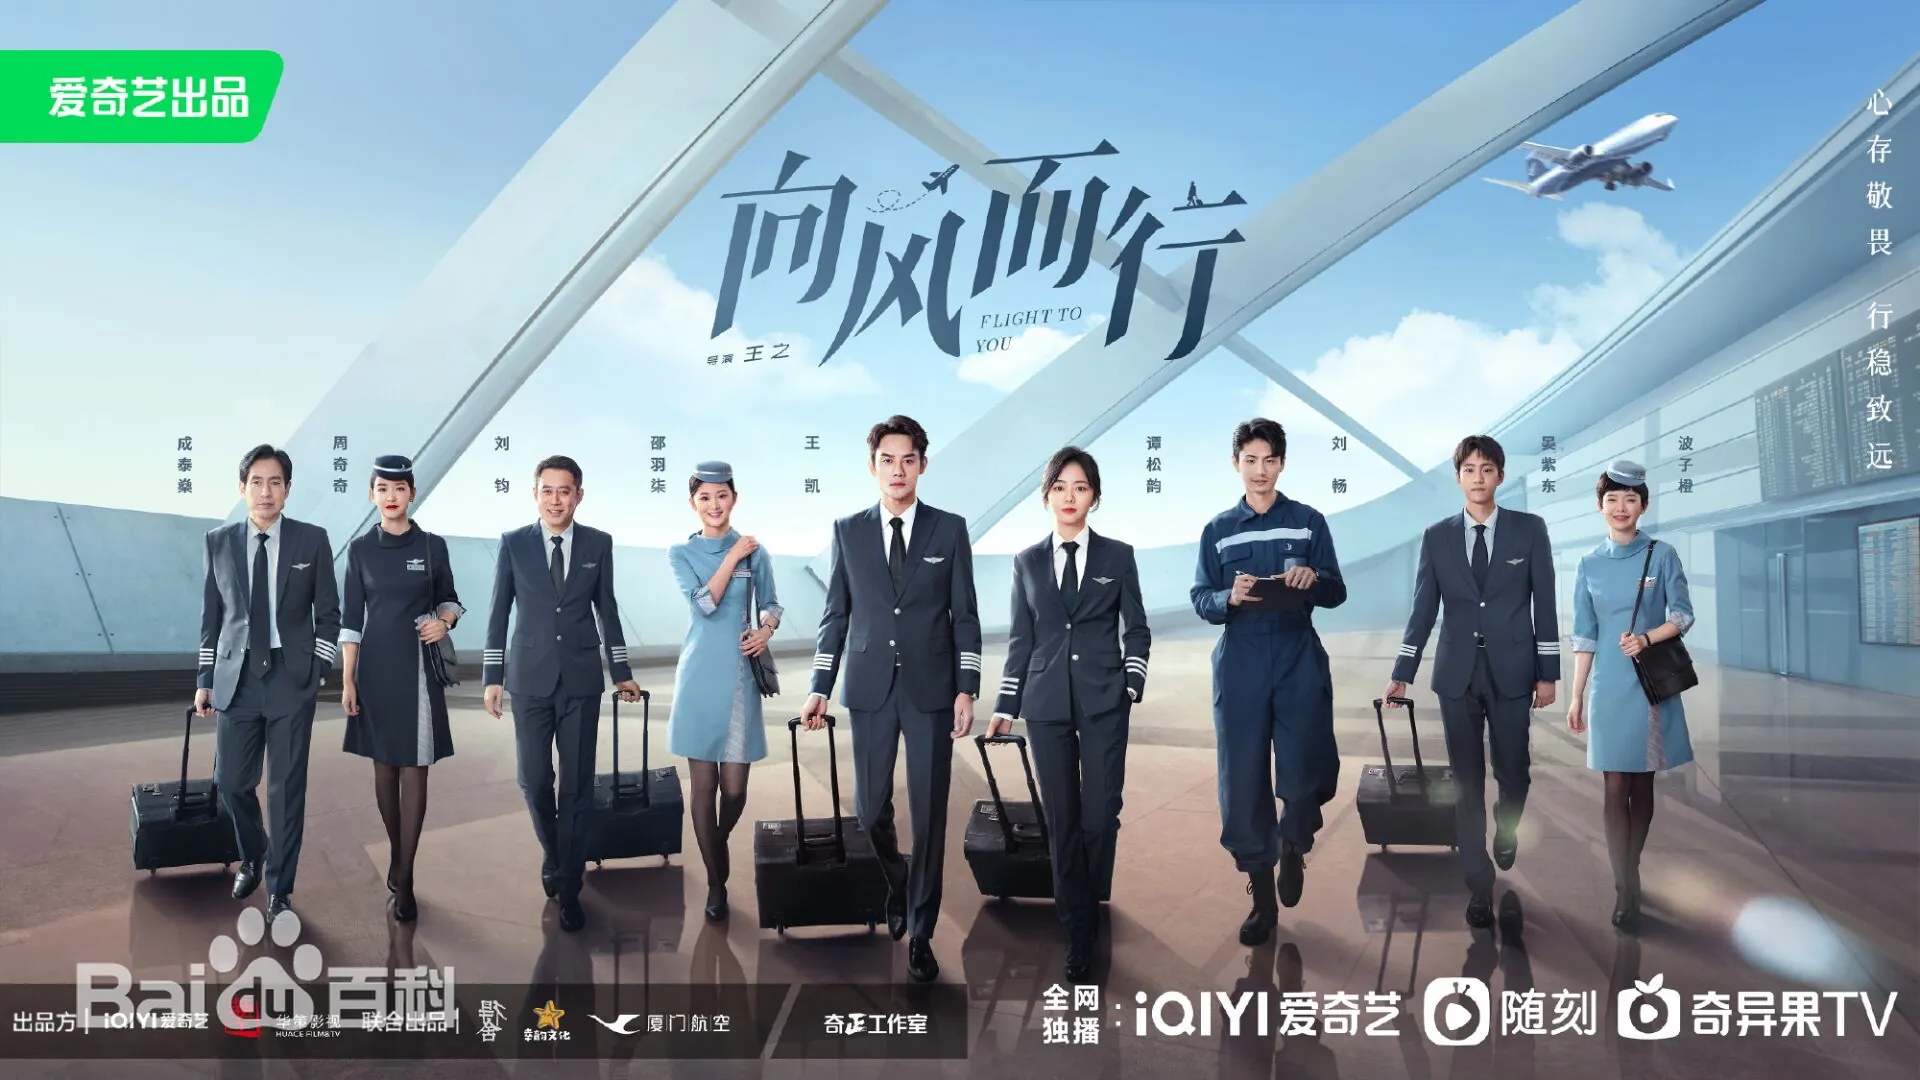 파일럿 복장을 입은 사람들&#44; 중국드라마 향풍이행 포스터